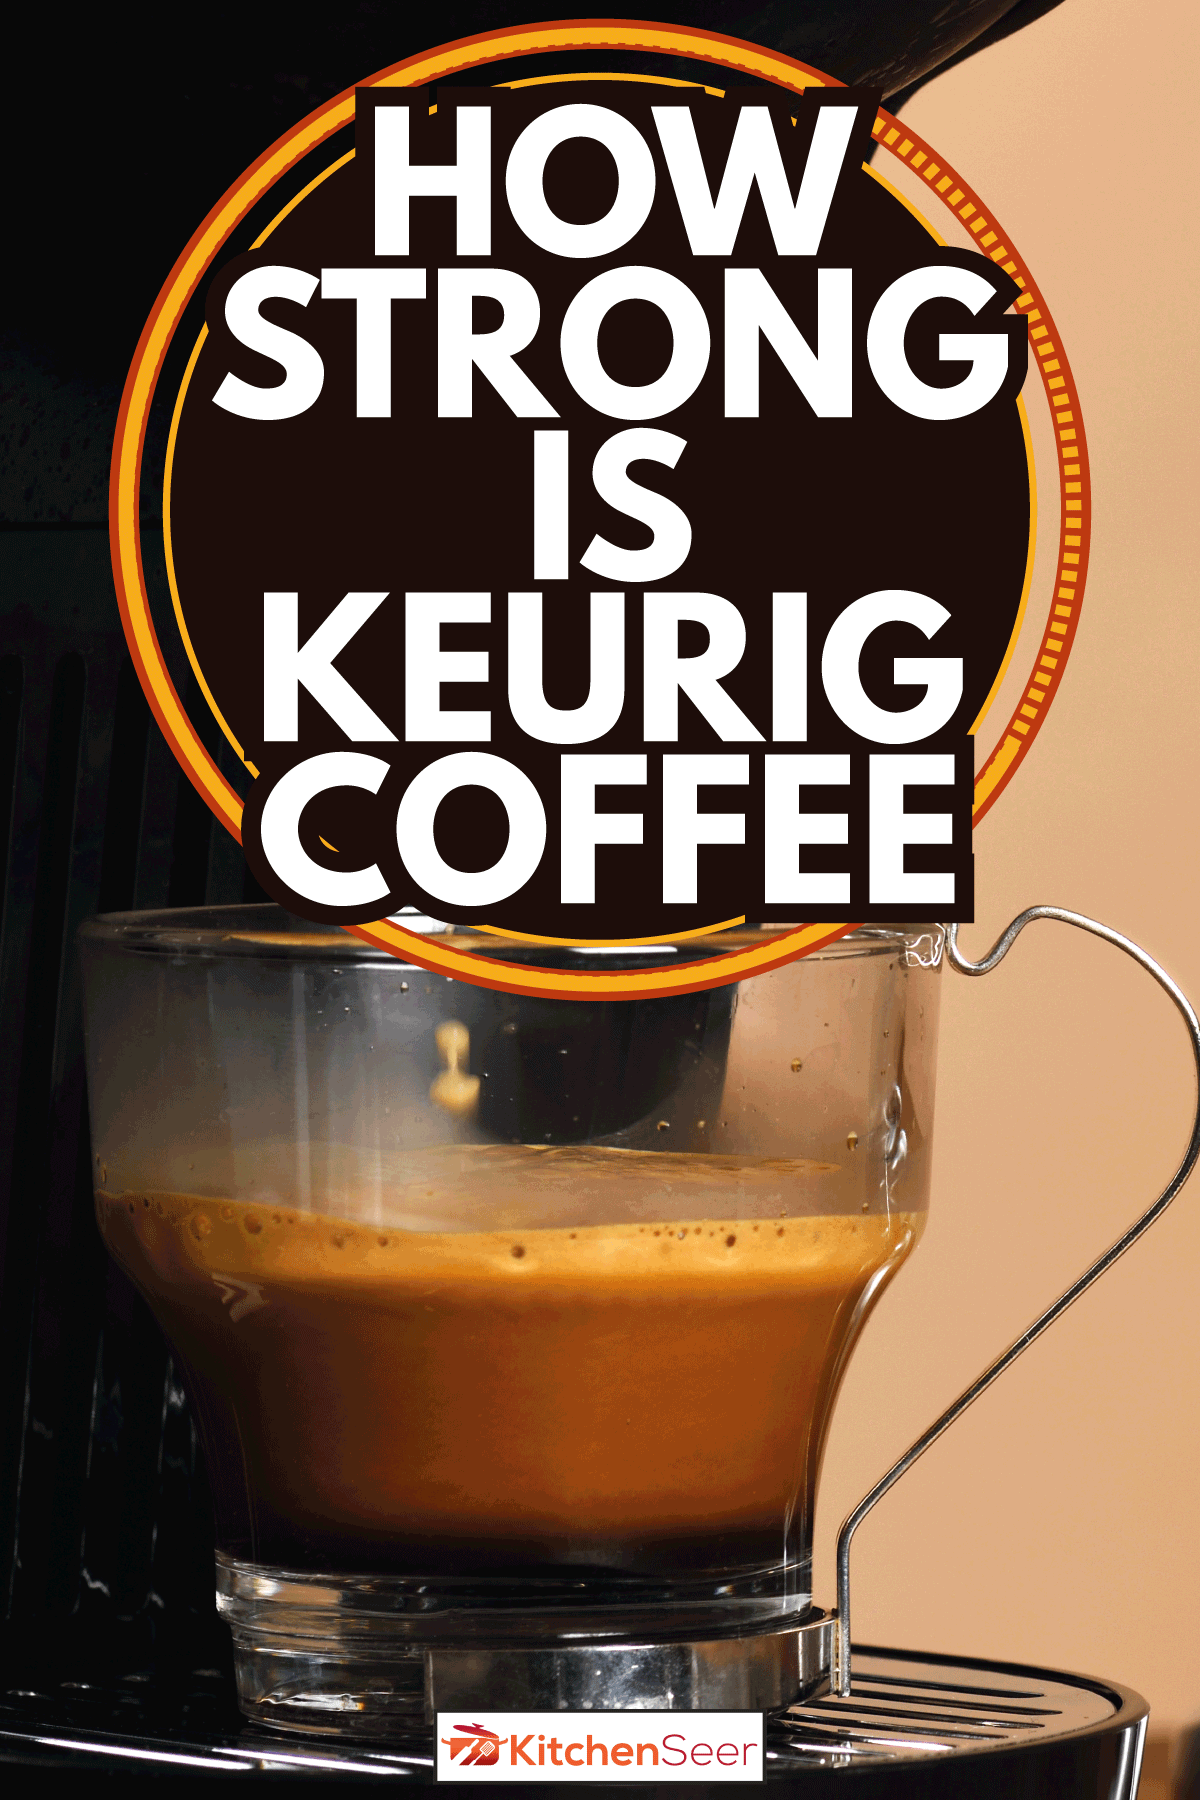 咖啡机煮咖啡在玻璃杯子。Keurig咖啡有多强